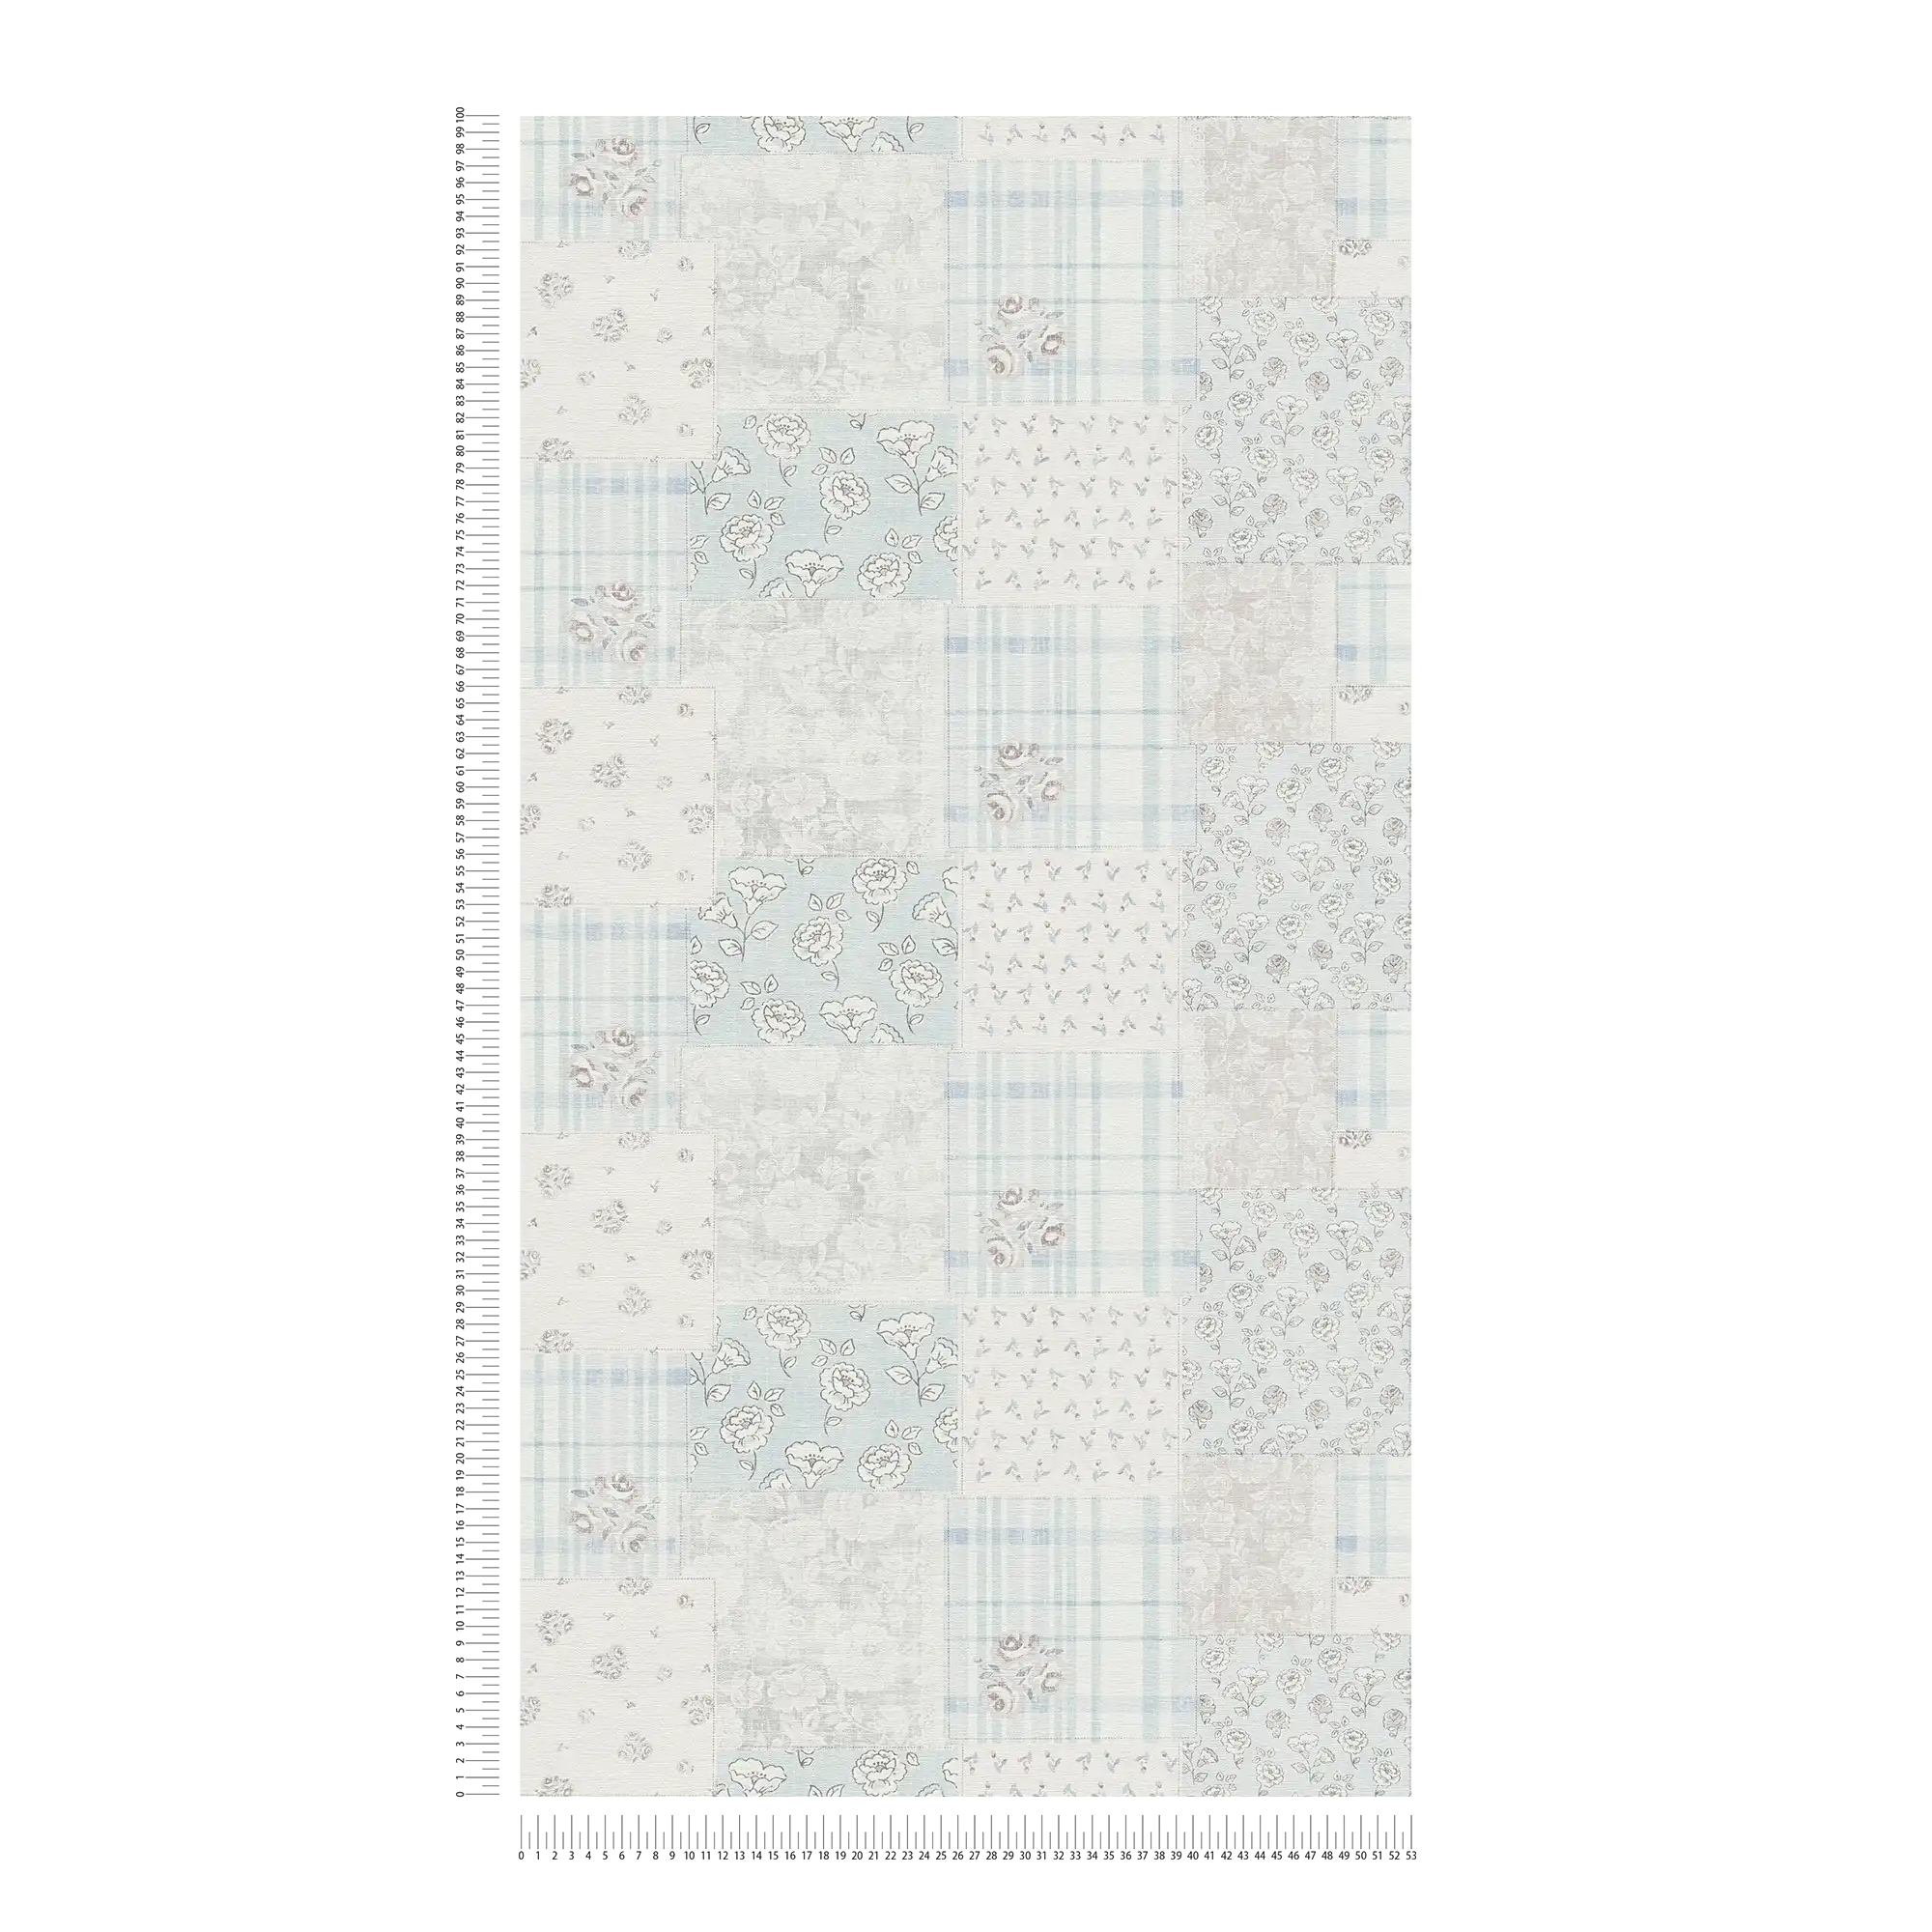             Vliesbehang bloemenpatroon en geruit landelijke stijl - lichtblauw, grijs, wit
        